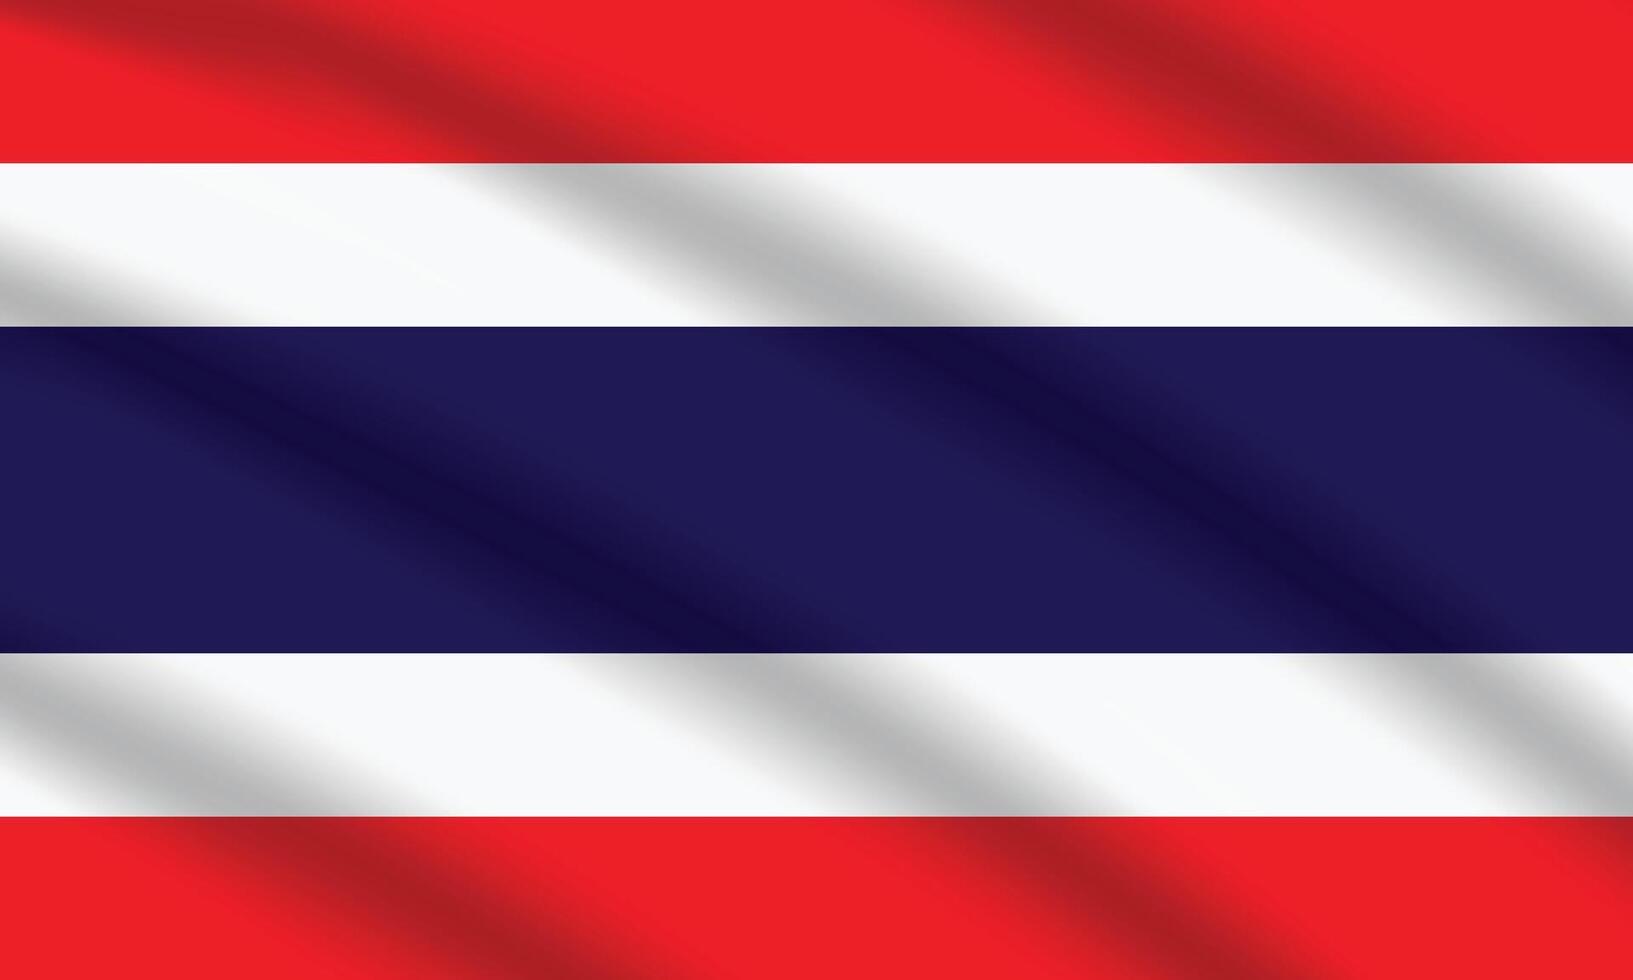 eben Illustration von Thailand National Flagge. Thailand Flagge Design. Thailand Welle Flagge. vektor